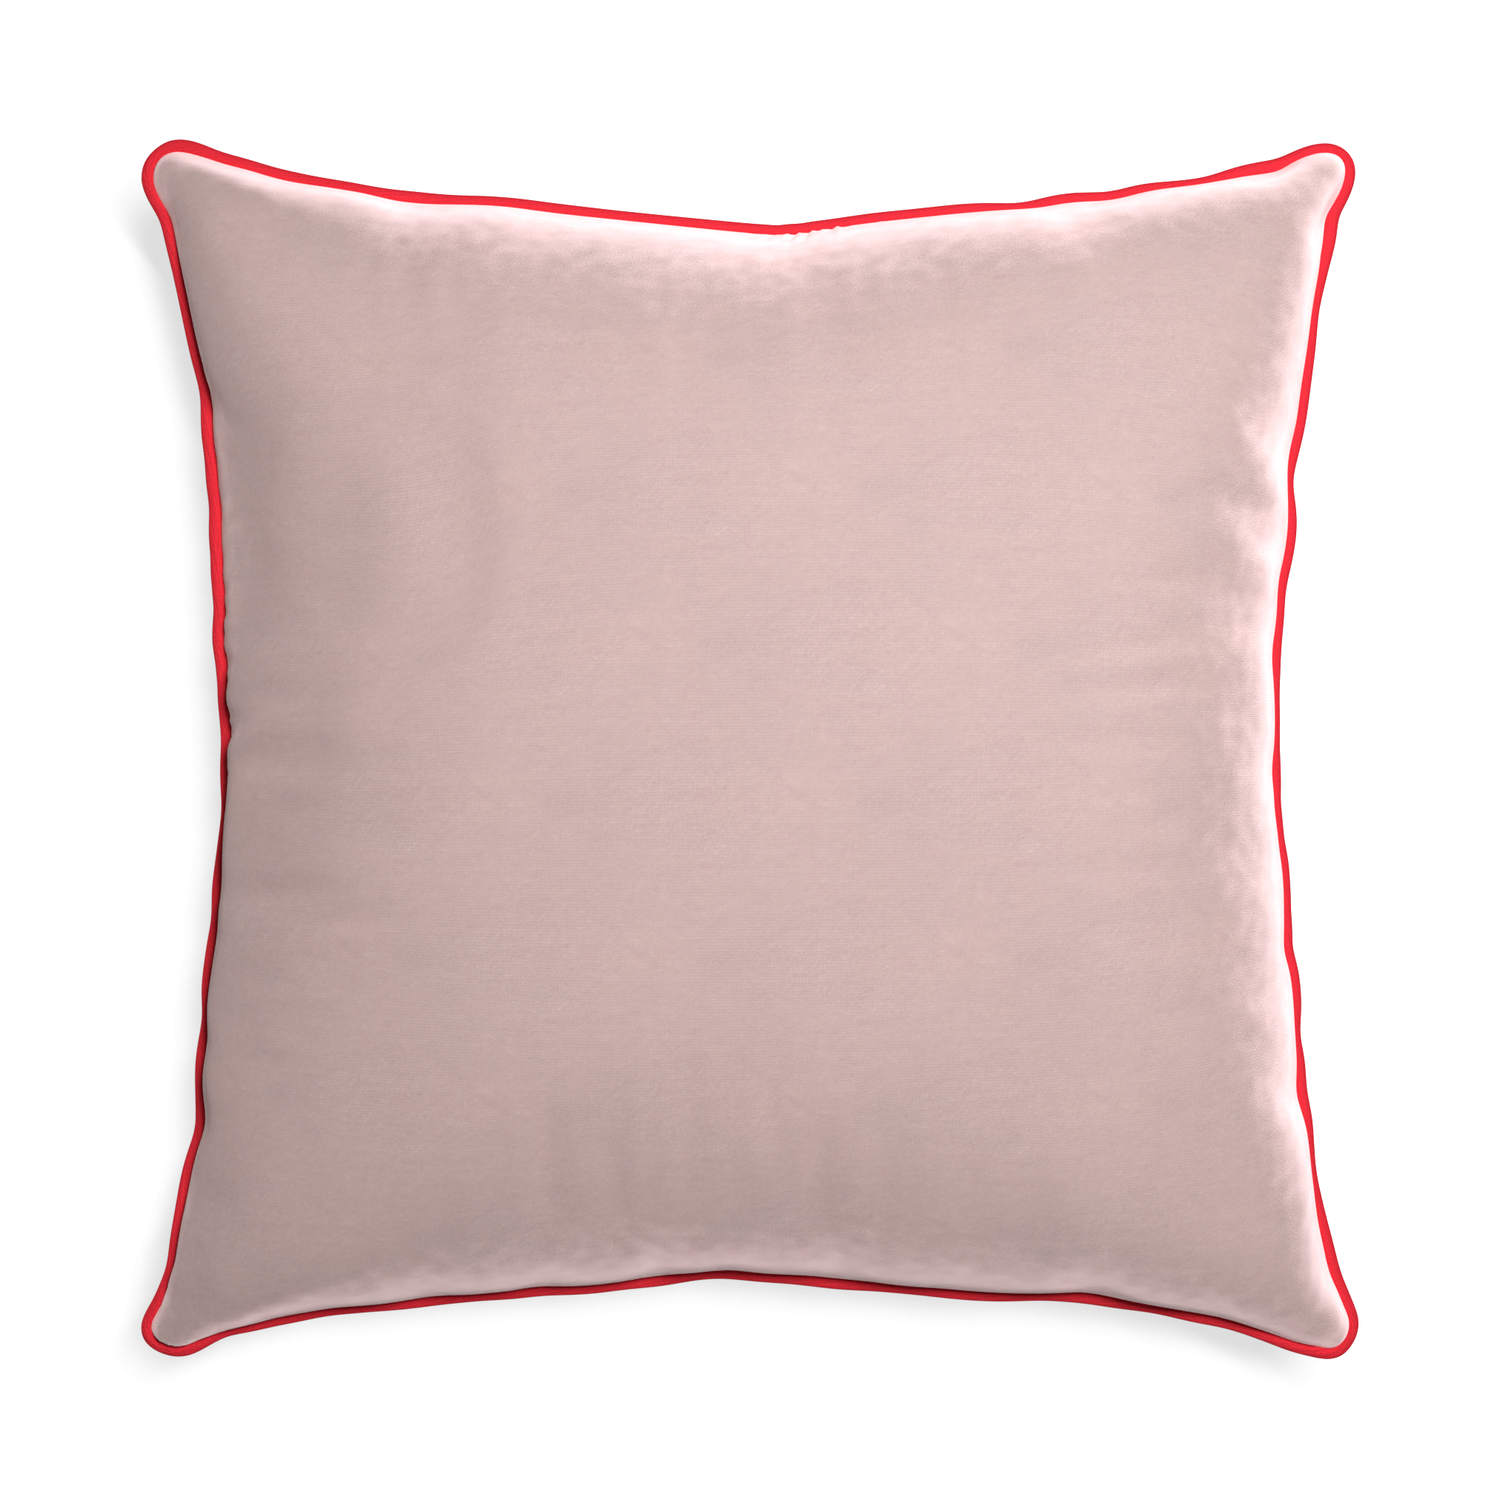 Euro-sham rose velvet custom pillow with cherry piping on white background